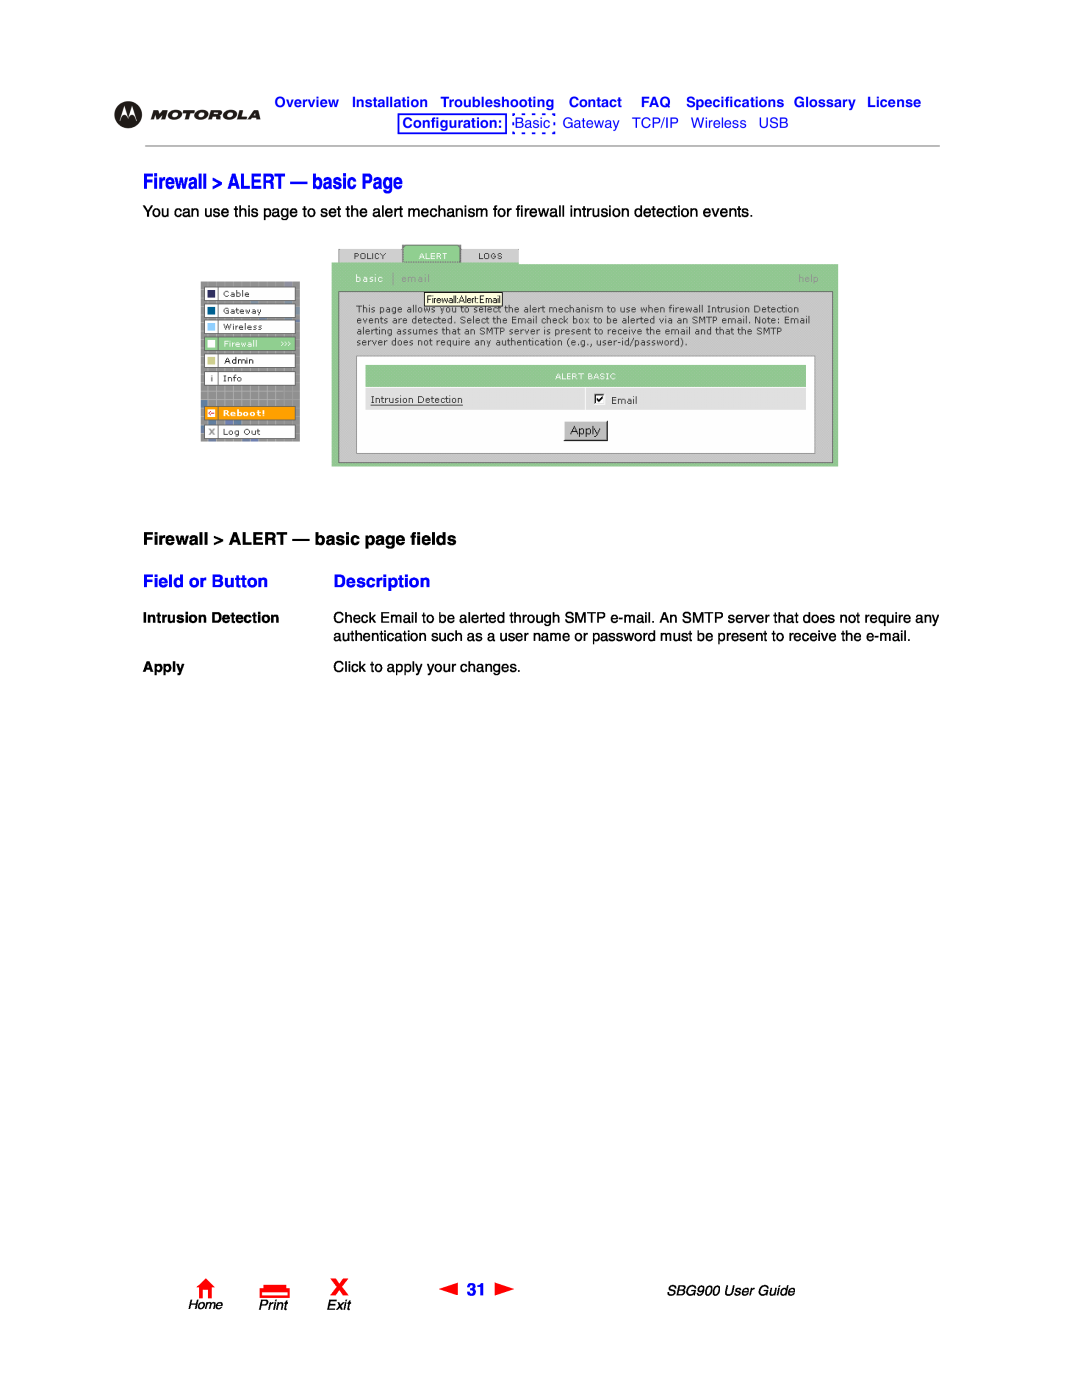 Motorola SBG900 manual Firewall ALERT - basic Page, Firewall ALERT - basic page fields, Field or Button, Description 